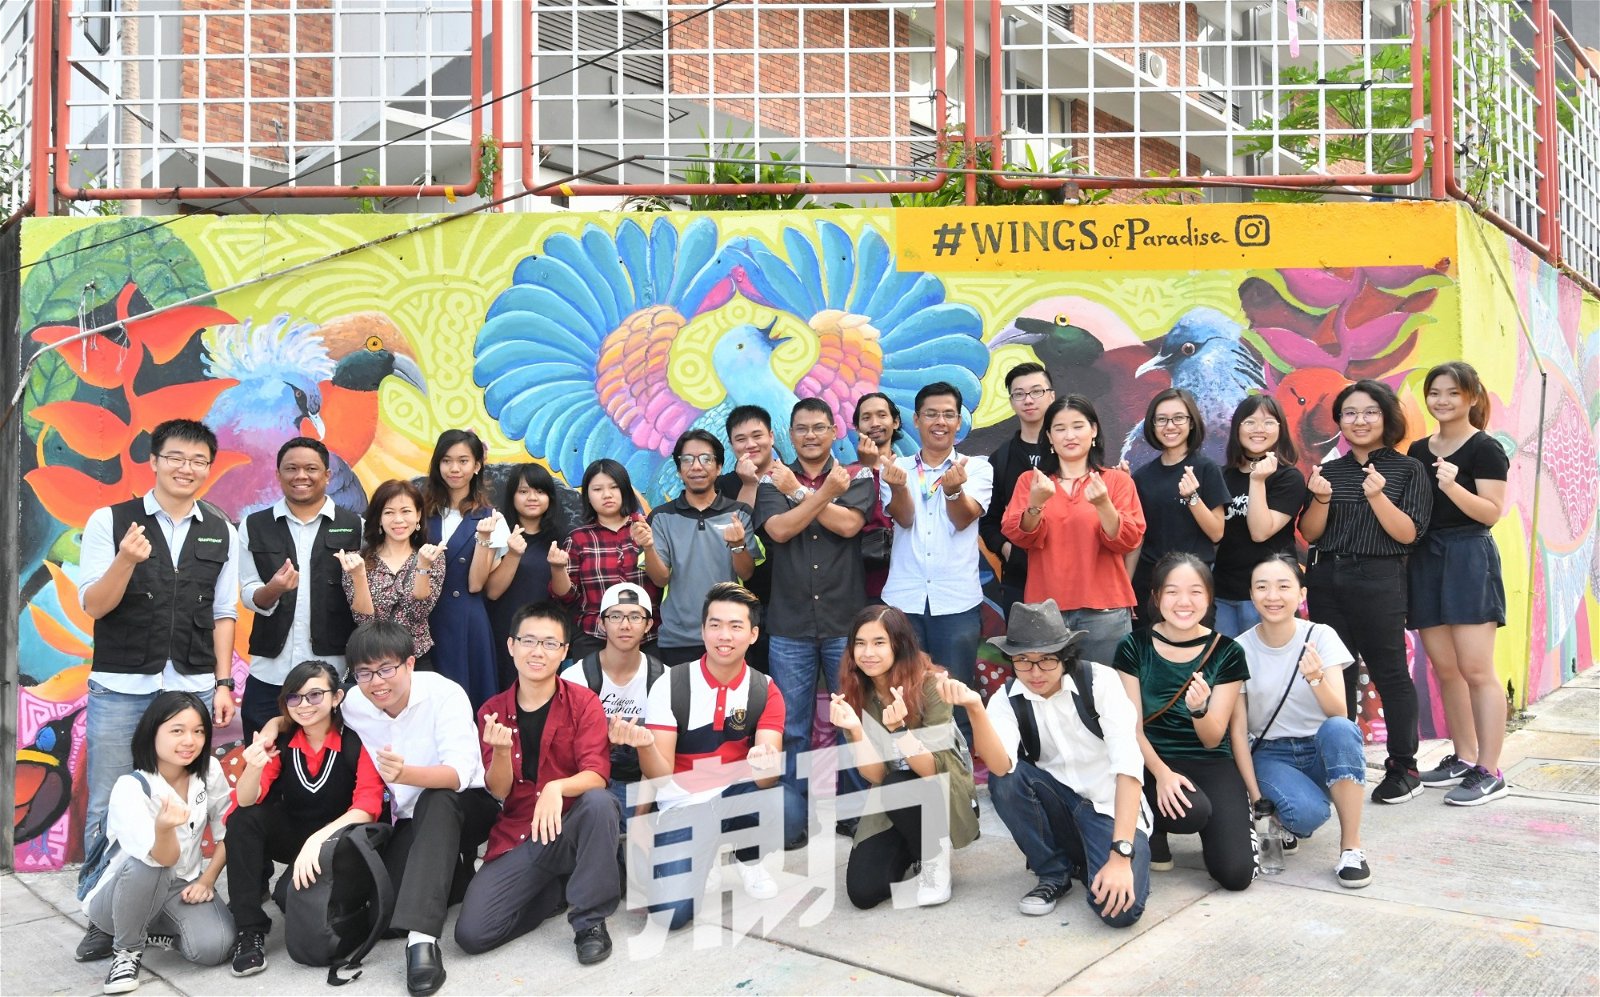 马来西亚绿色和平组织推介“天堂之翼”壁画，呼吁人民关注及保护森林和环境。 次排右5起为李慧玲、玛祖基、扎米兹和阿兹米。次排左为王佳骏。 （摄影：张真甄）